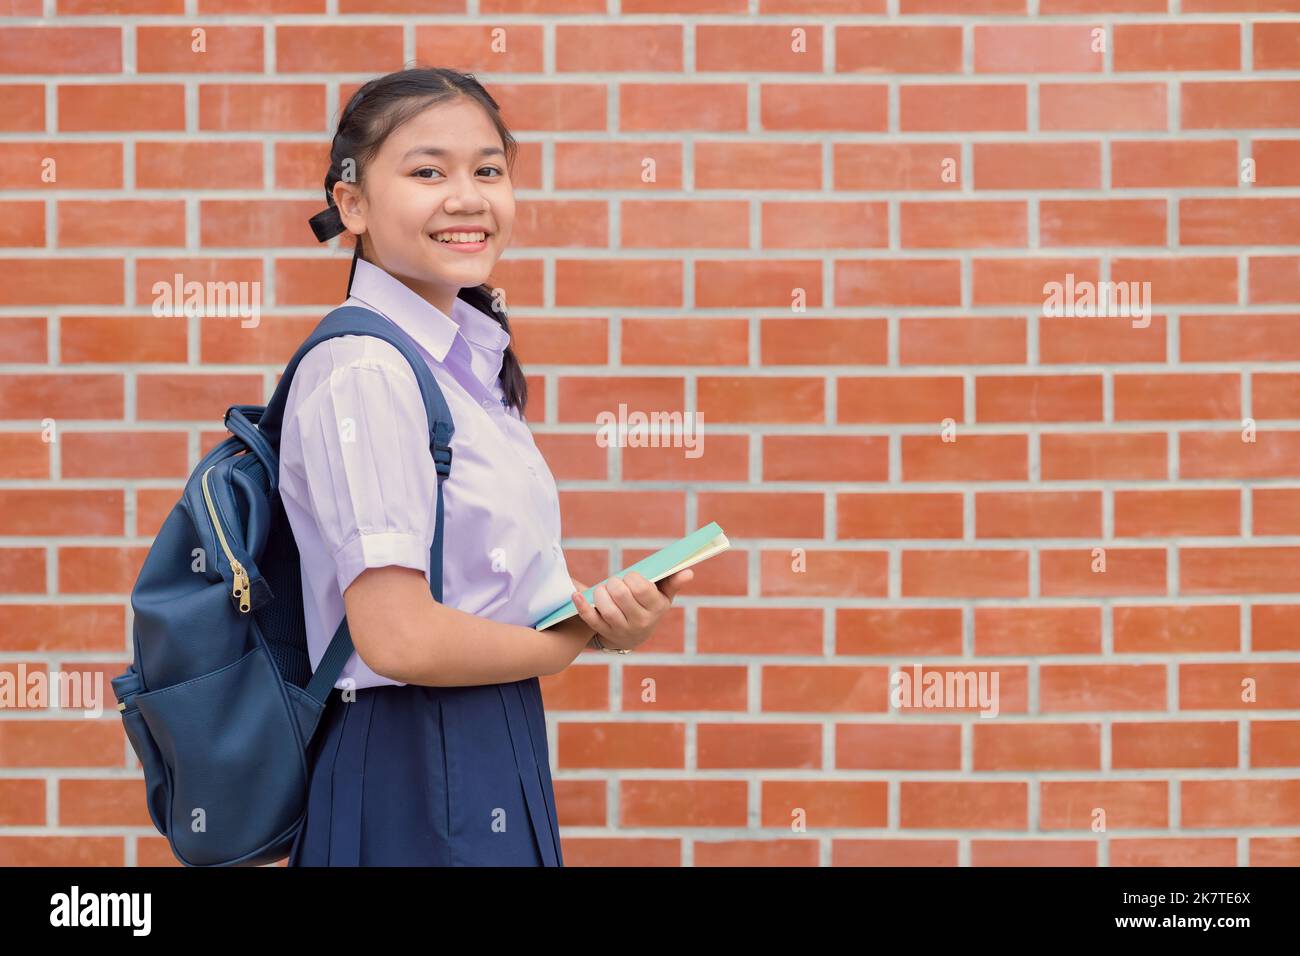 Thai asiatique école fille adolescent sourire heureux dans la poignée uniforme livre et sac d'école avec espace de copie Banque D'Images